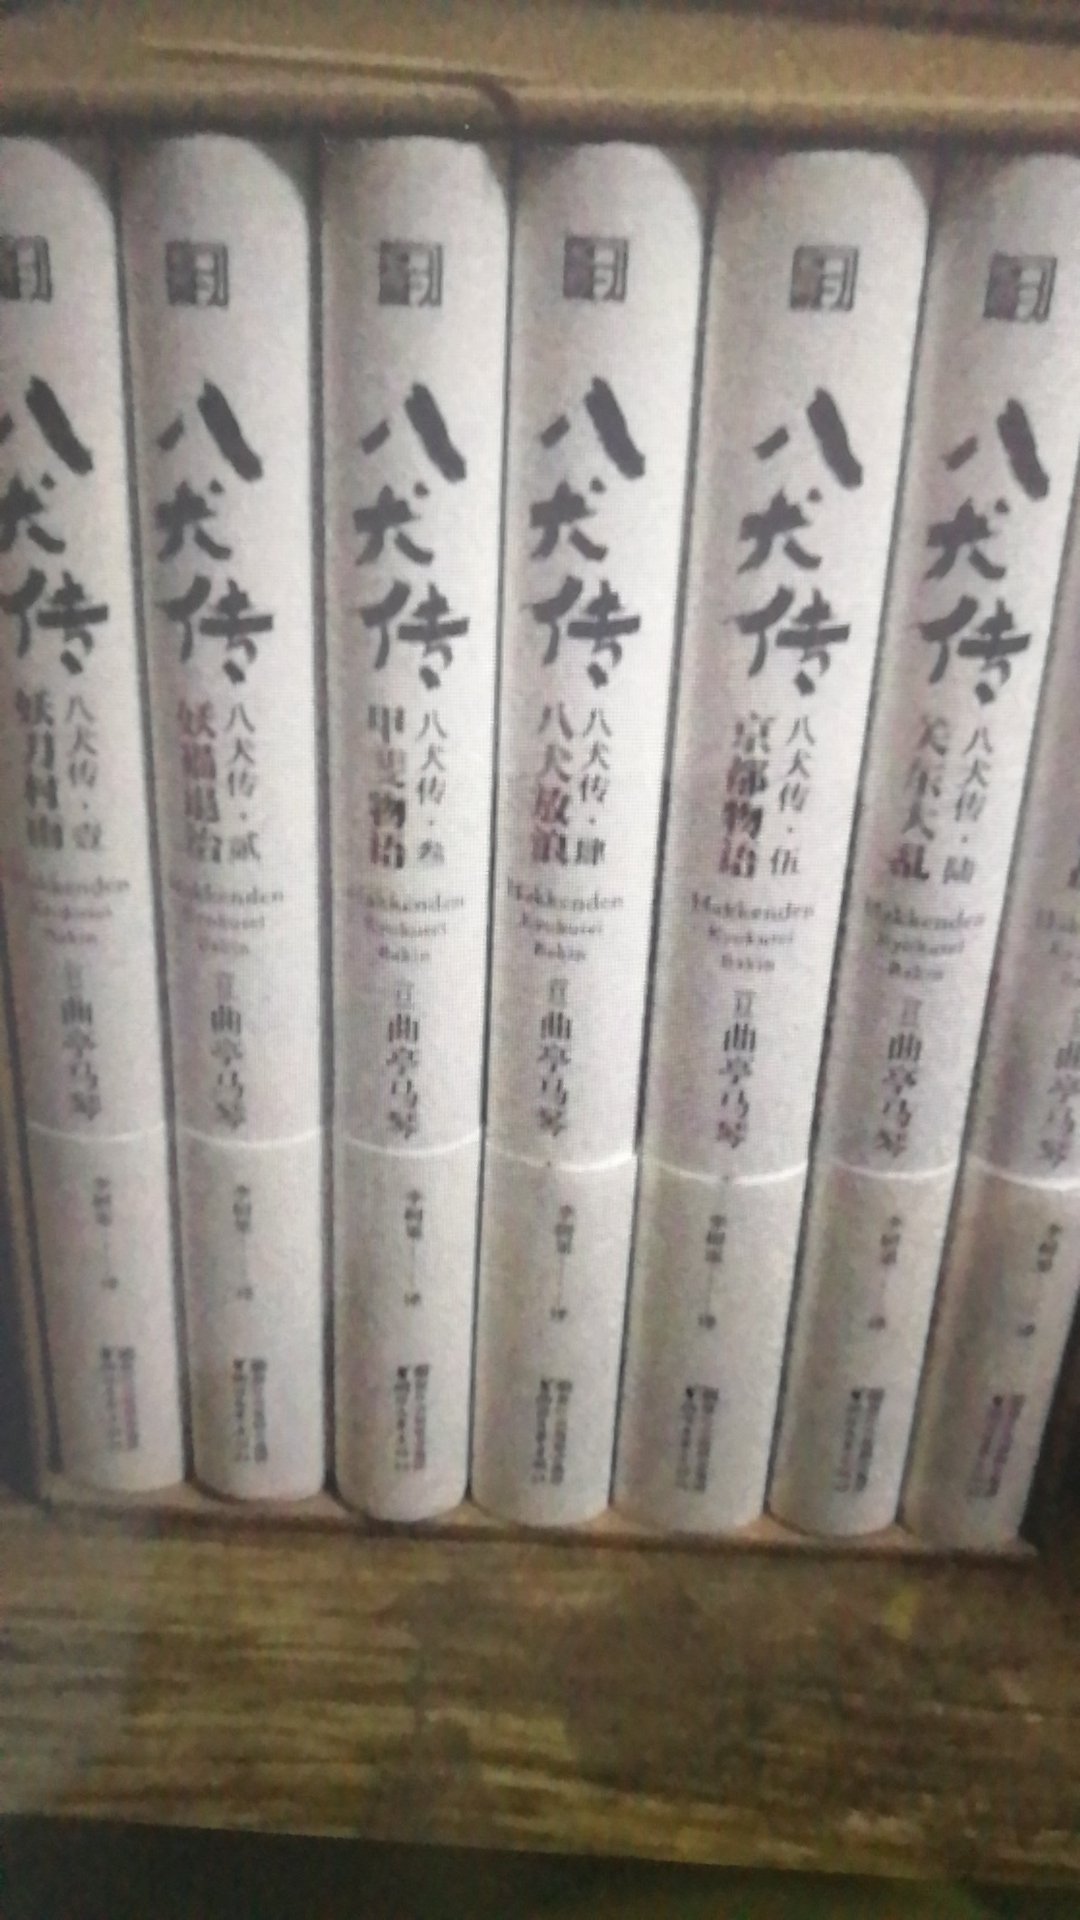 对日本及历史和文学都有点兴趣，看了评论这套书质量不错，又赶上促销就入手了。还没来得及看，等有时间了慢慢读。